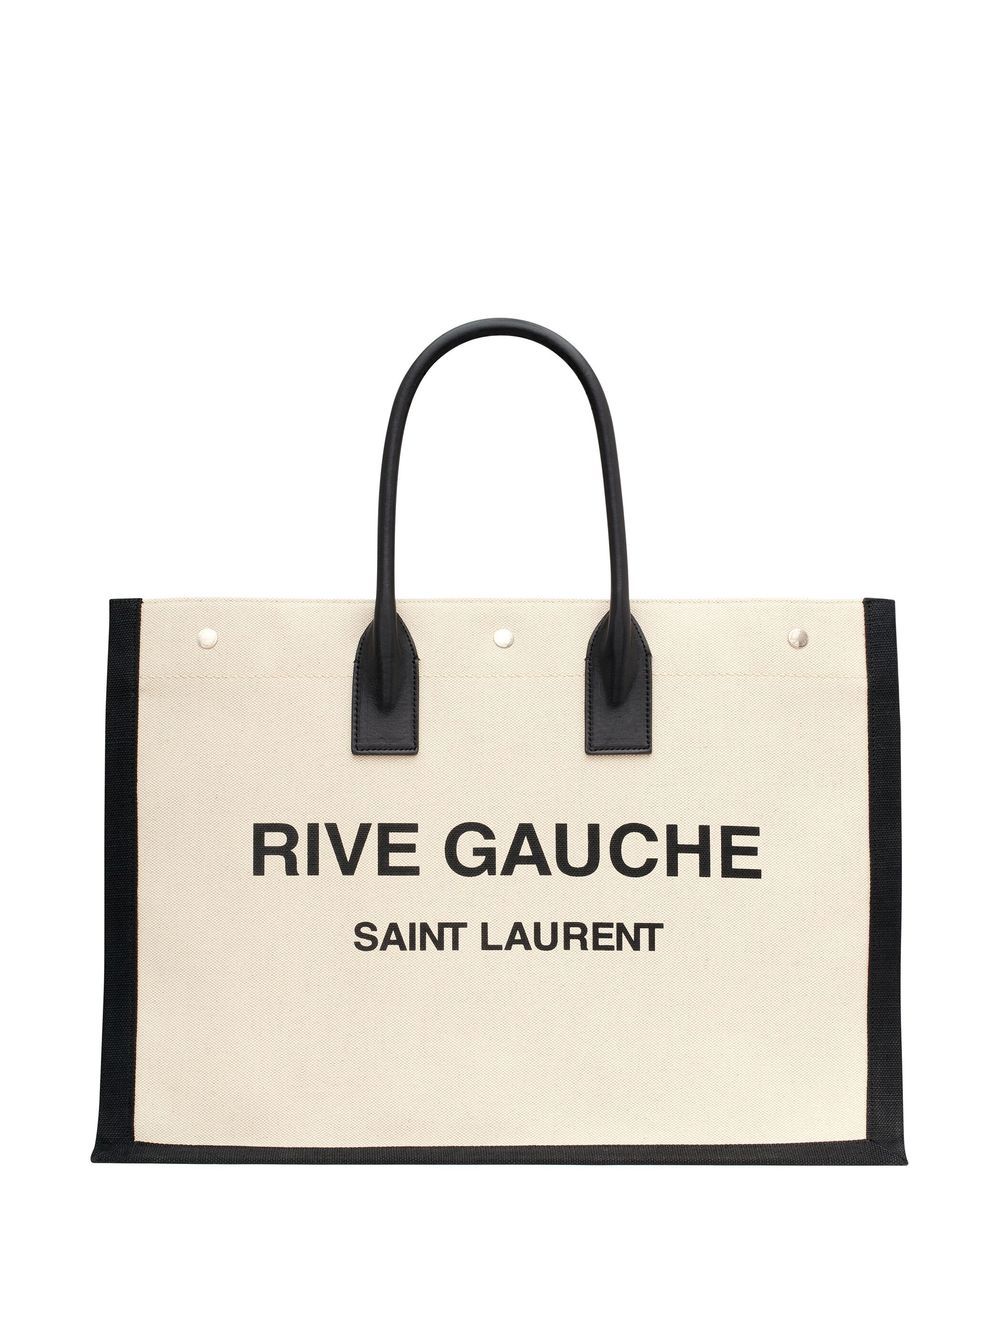 Saint Laurent Sac cabas beige Rive Gauche - Lothaire